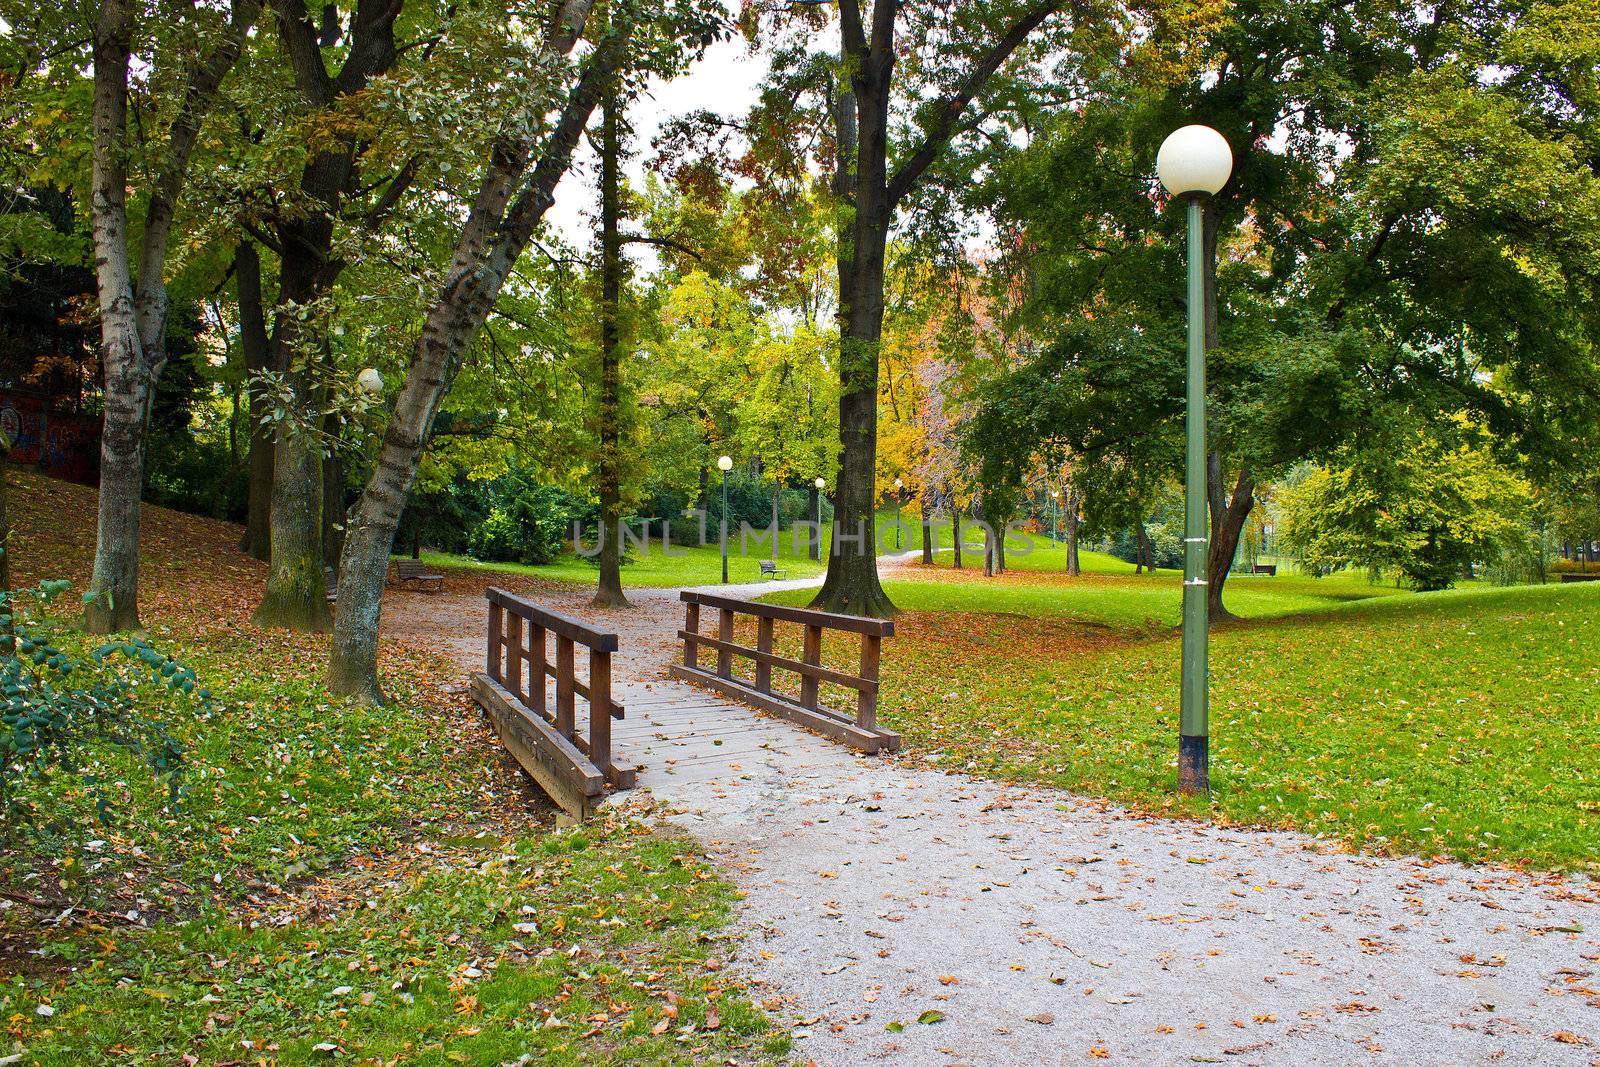 City of Zagreb autumn park by xbrchx